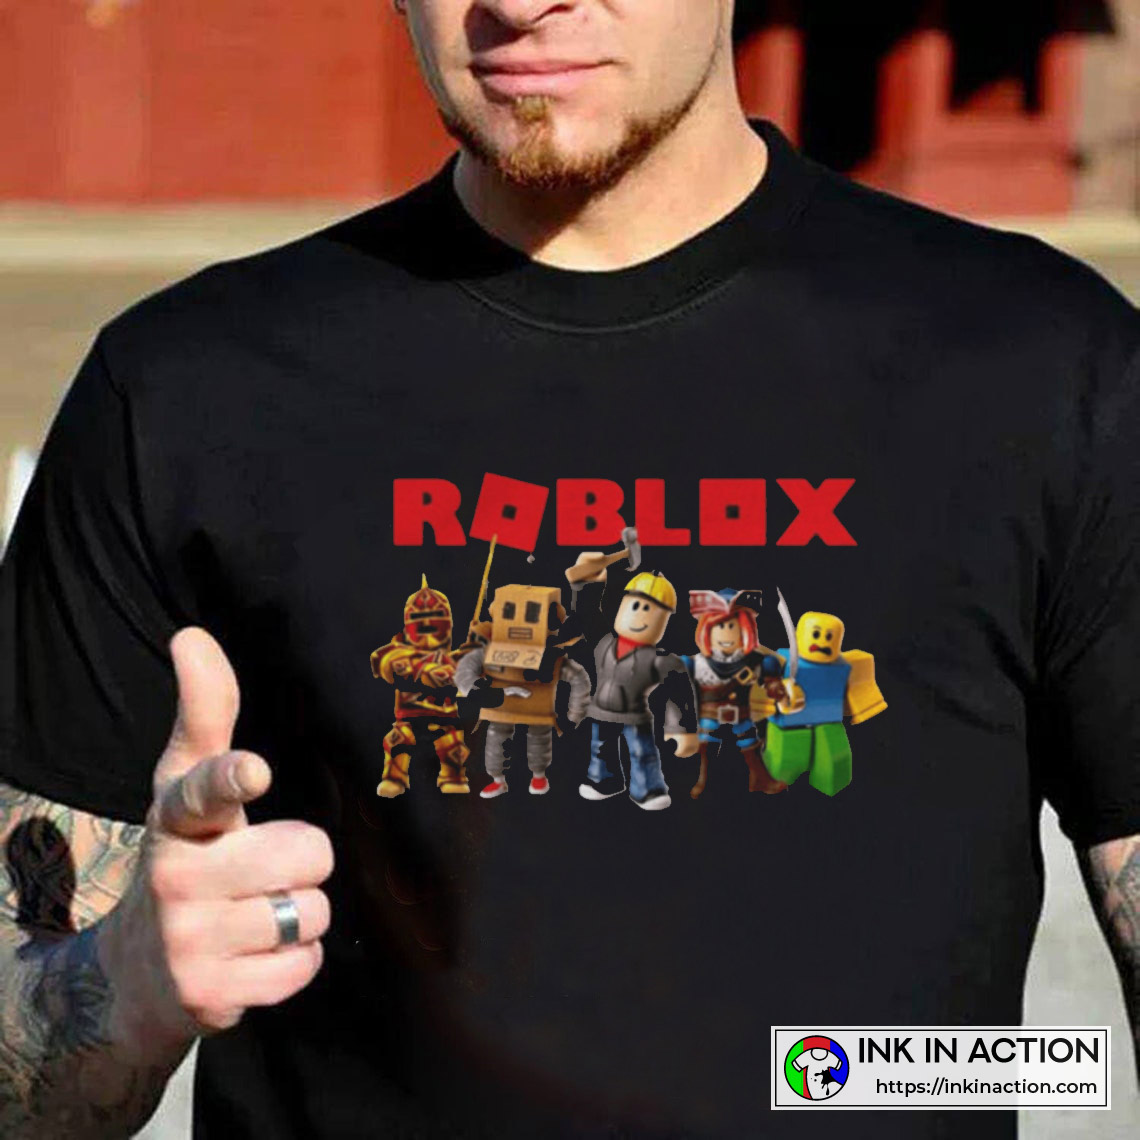 T-shirt Roblox Em 2021 8AF  Roblox shirt, Christmas tshirts, Roblox t  shirts